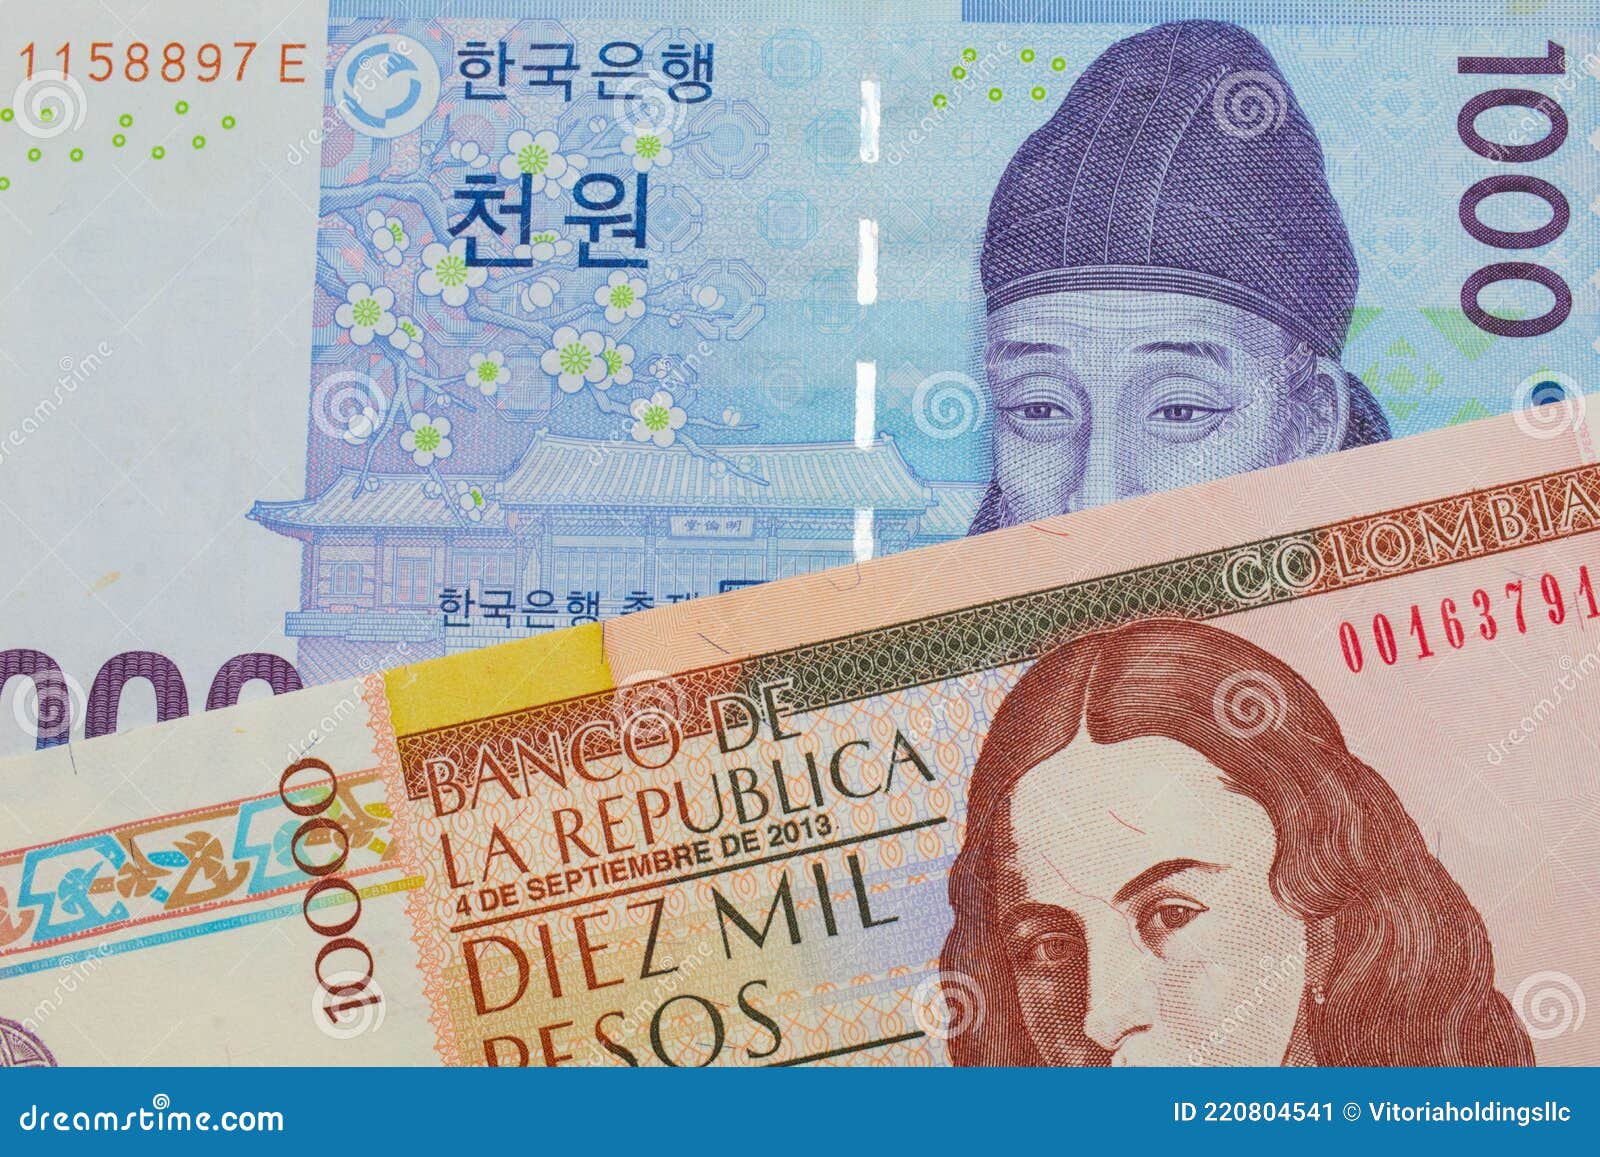 朝鲜1000元纸币图片,韩元1000元纸币图片 - 伤感说说吧